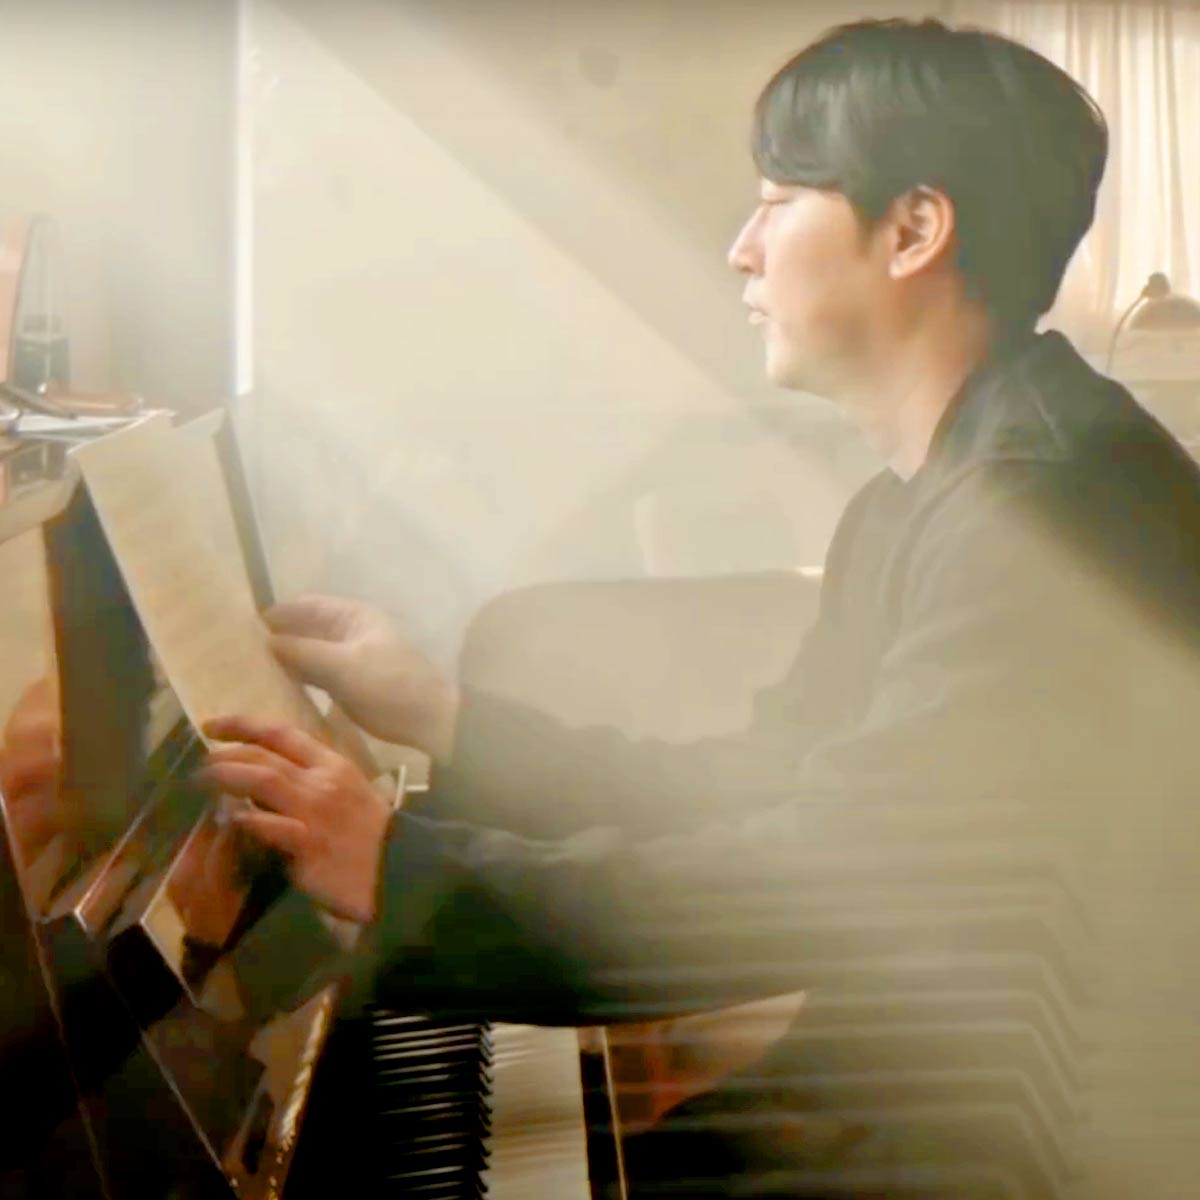 Play May Be By Yiruma Piano Music Sheet On Virtual Piano - terus song piano roblox